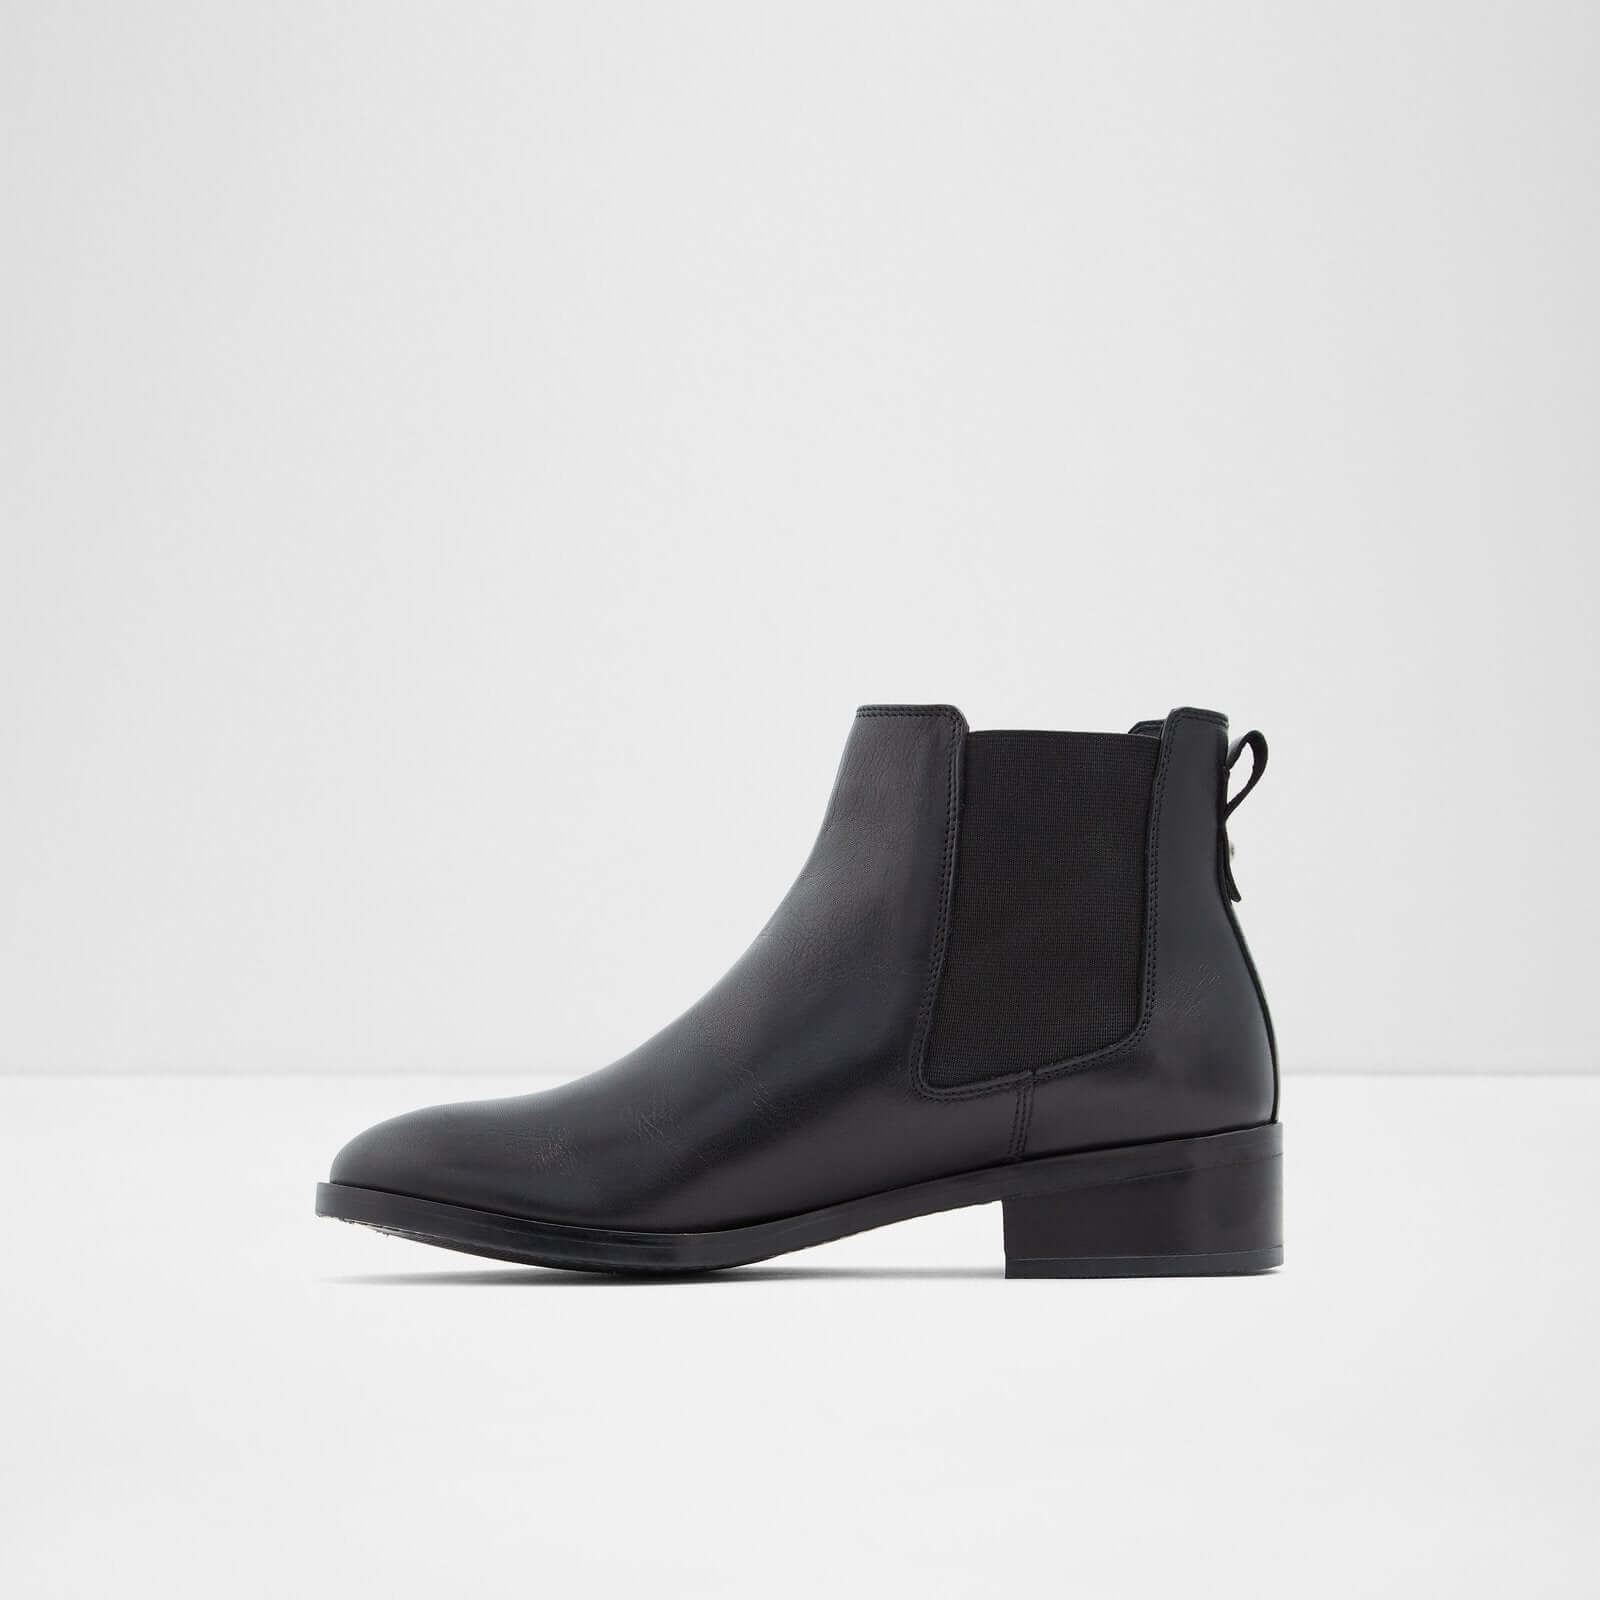 Aldo Women's Boots Eraylia (Black) – ALDO Shoes UK